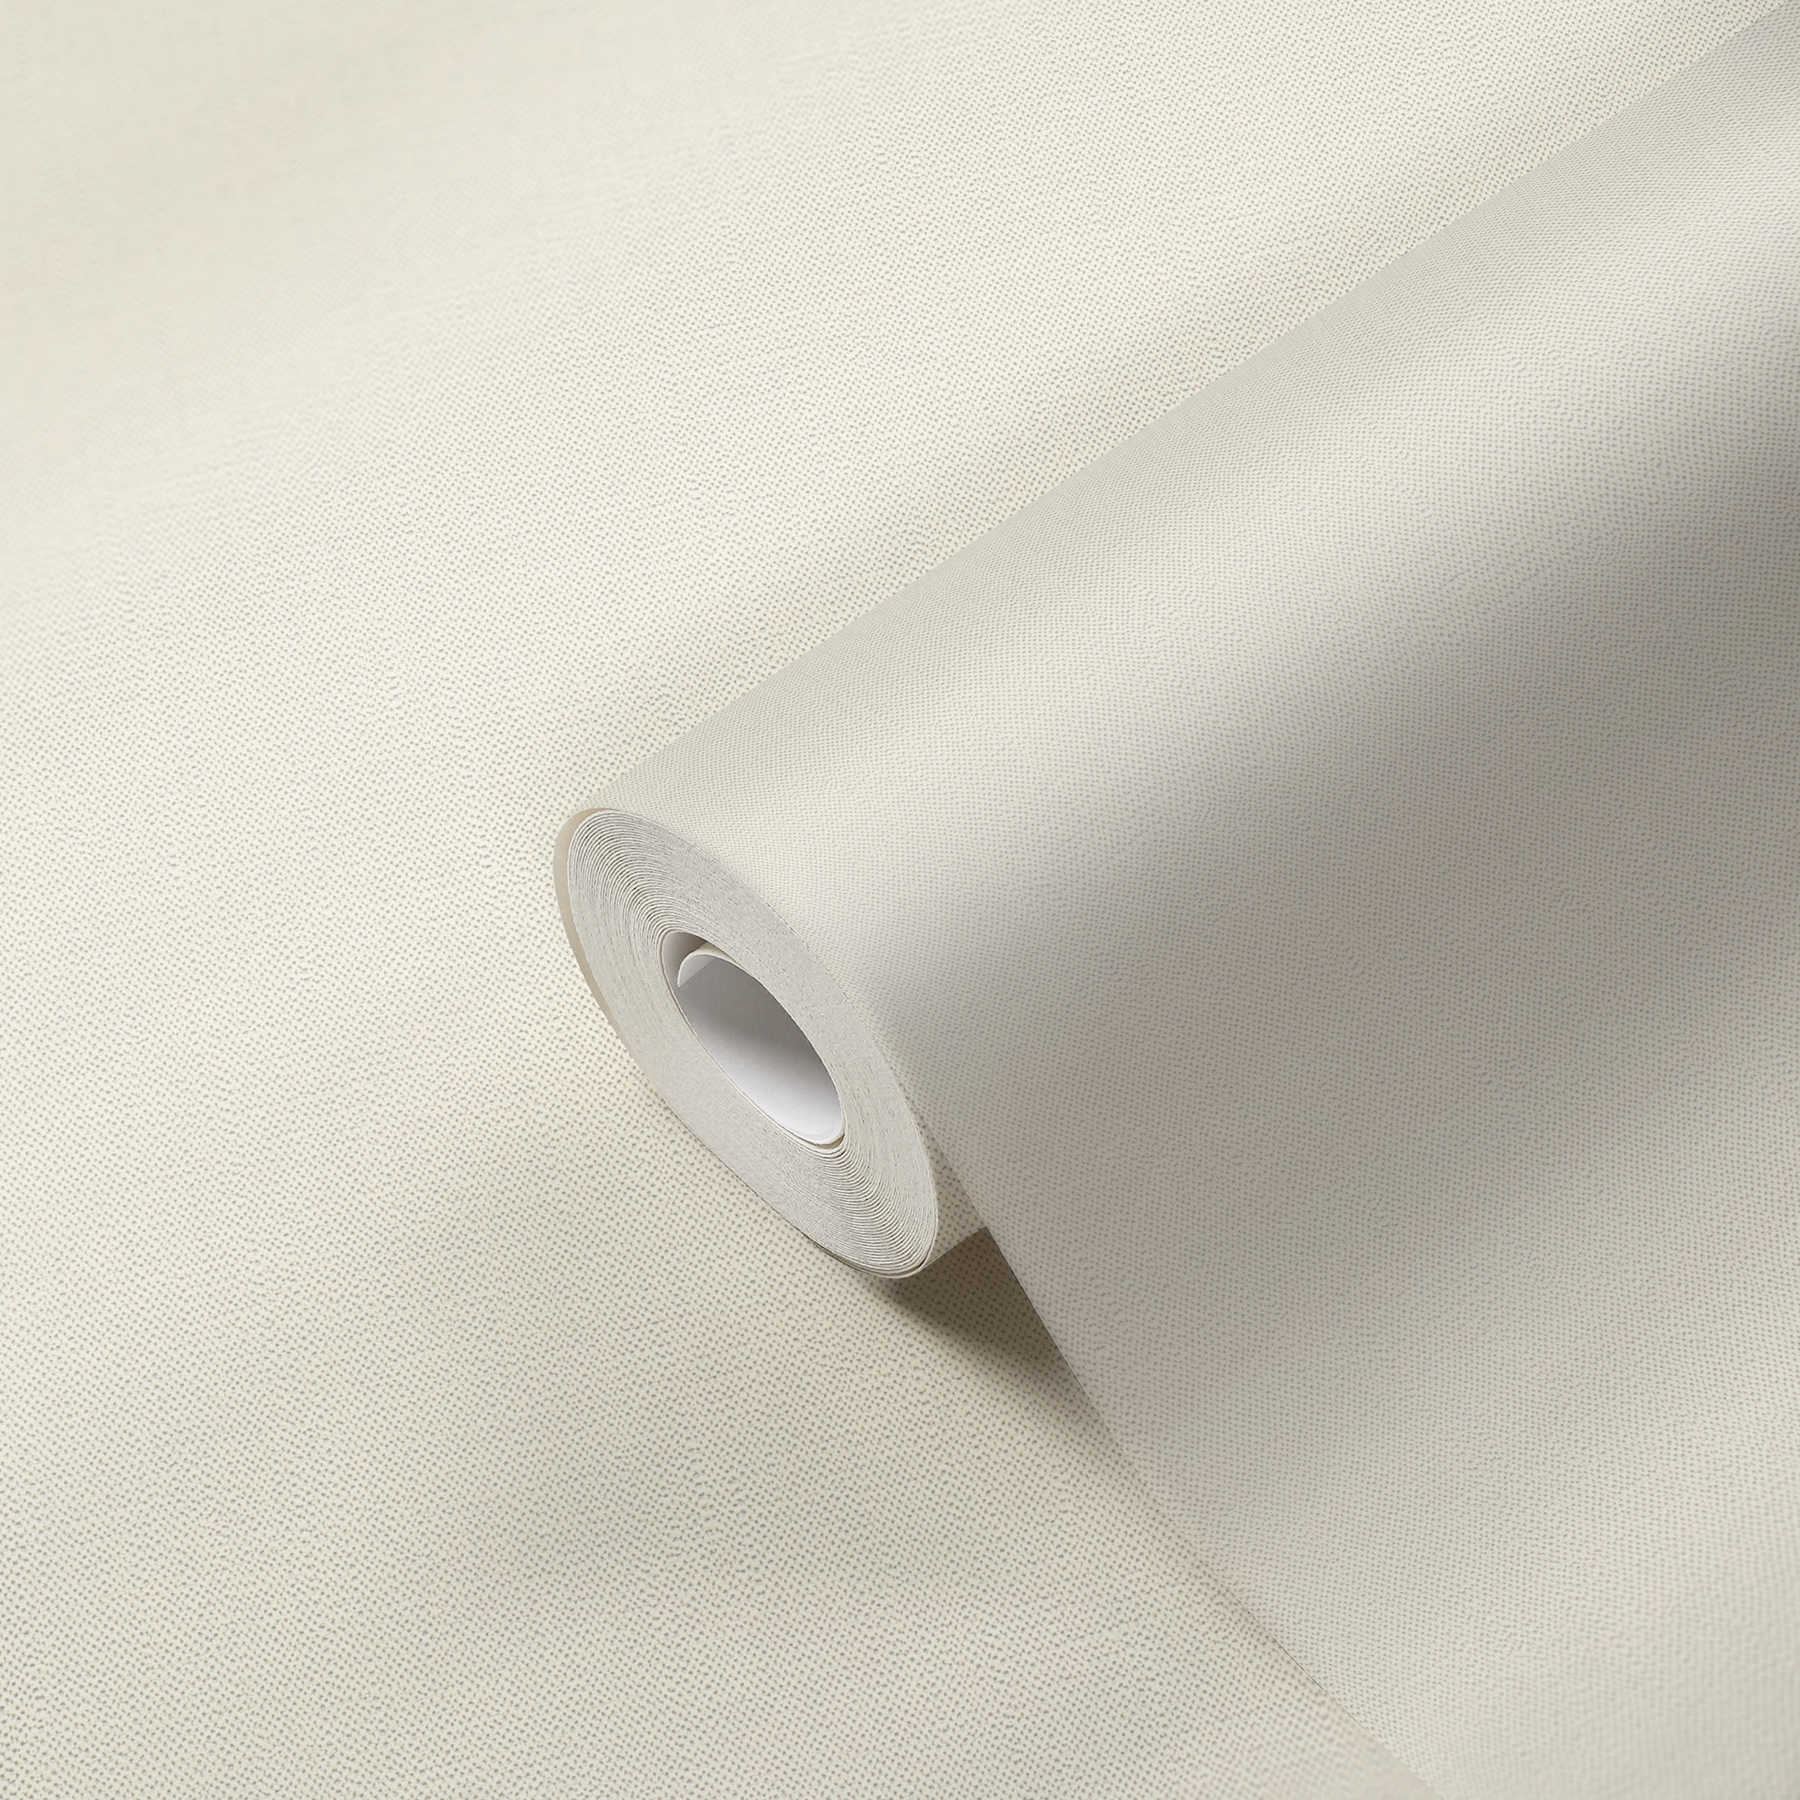             Papier peint uni crème avec structure en mousse d'aspect textile
        